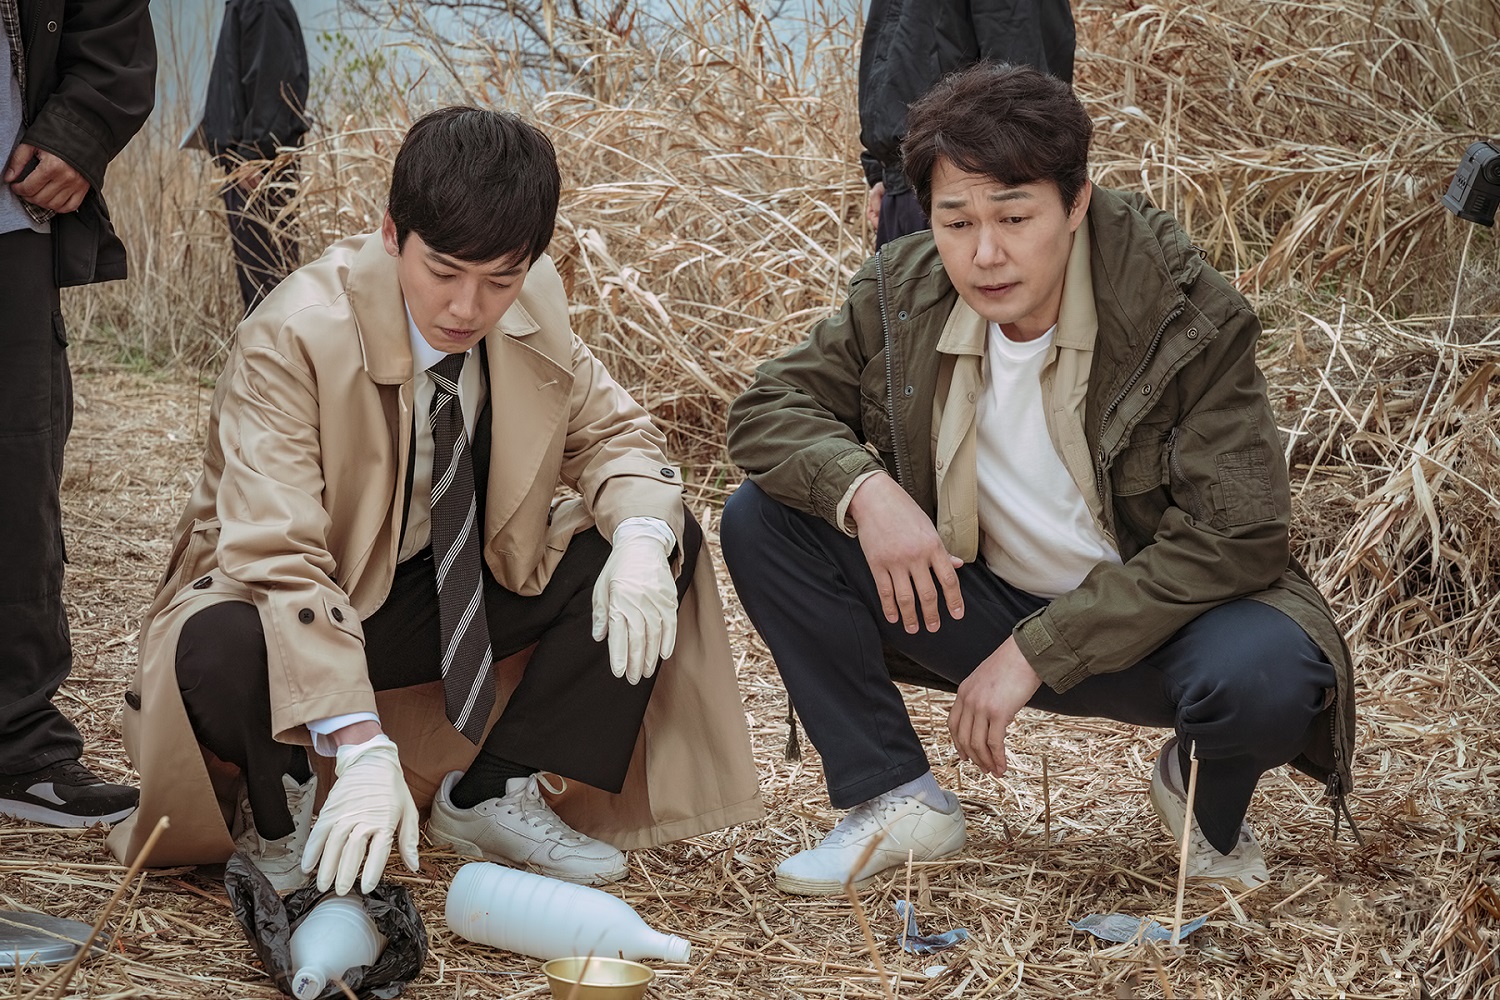 harper bazaar phim dieu tra phap y han quoc 6 1 - Top 8 bộ phim hình sự điều tra pháp y Hàn Quốc đáng xem nhất